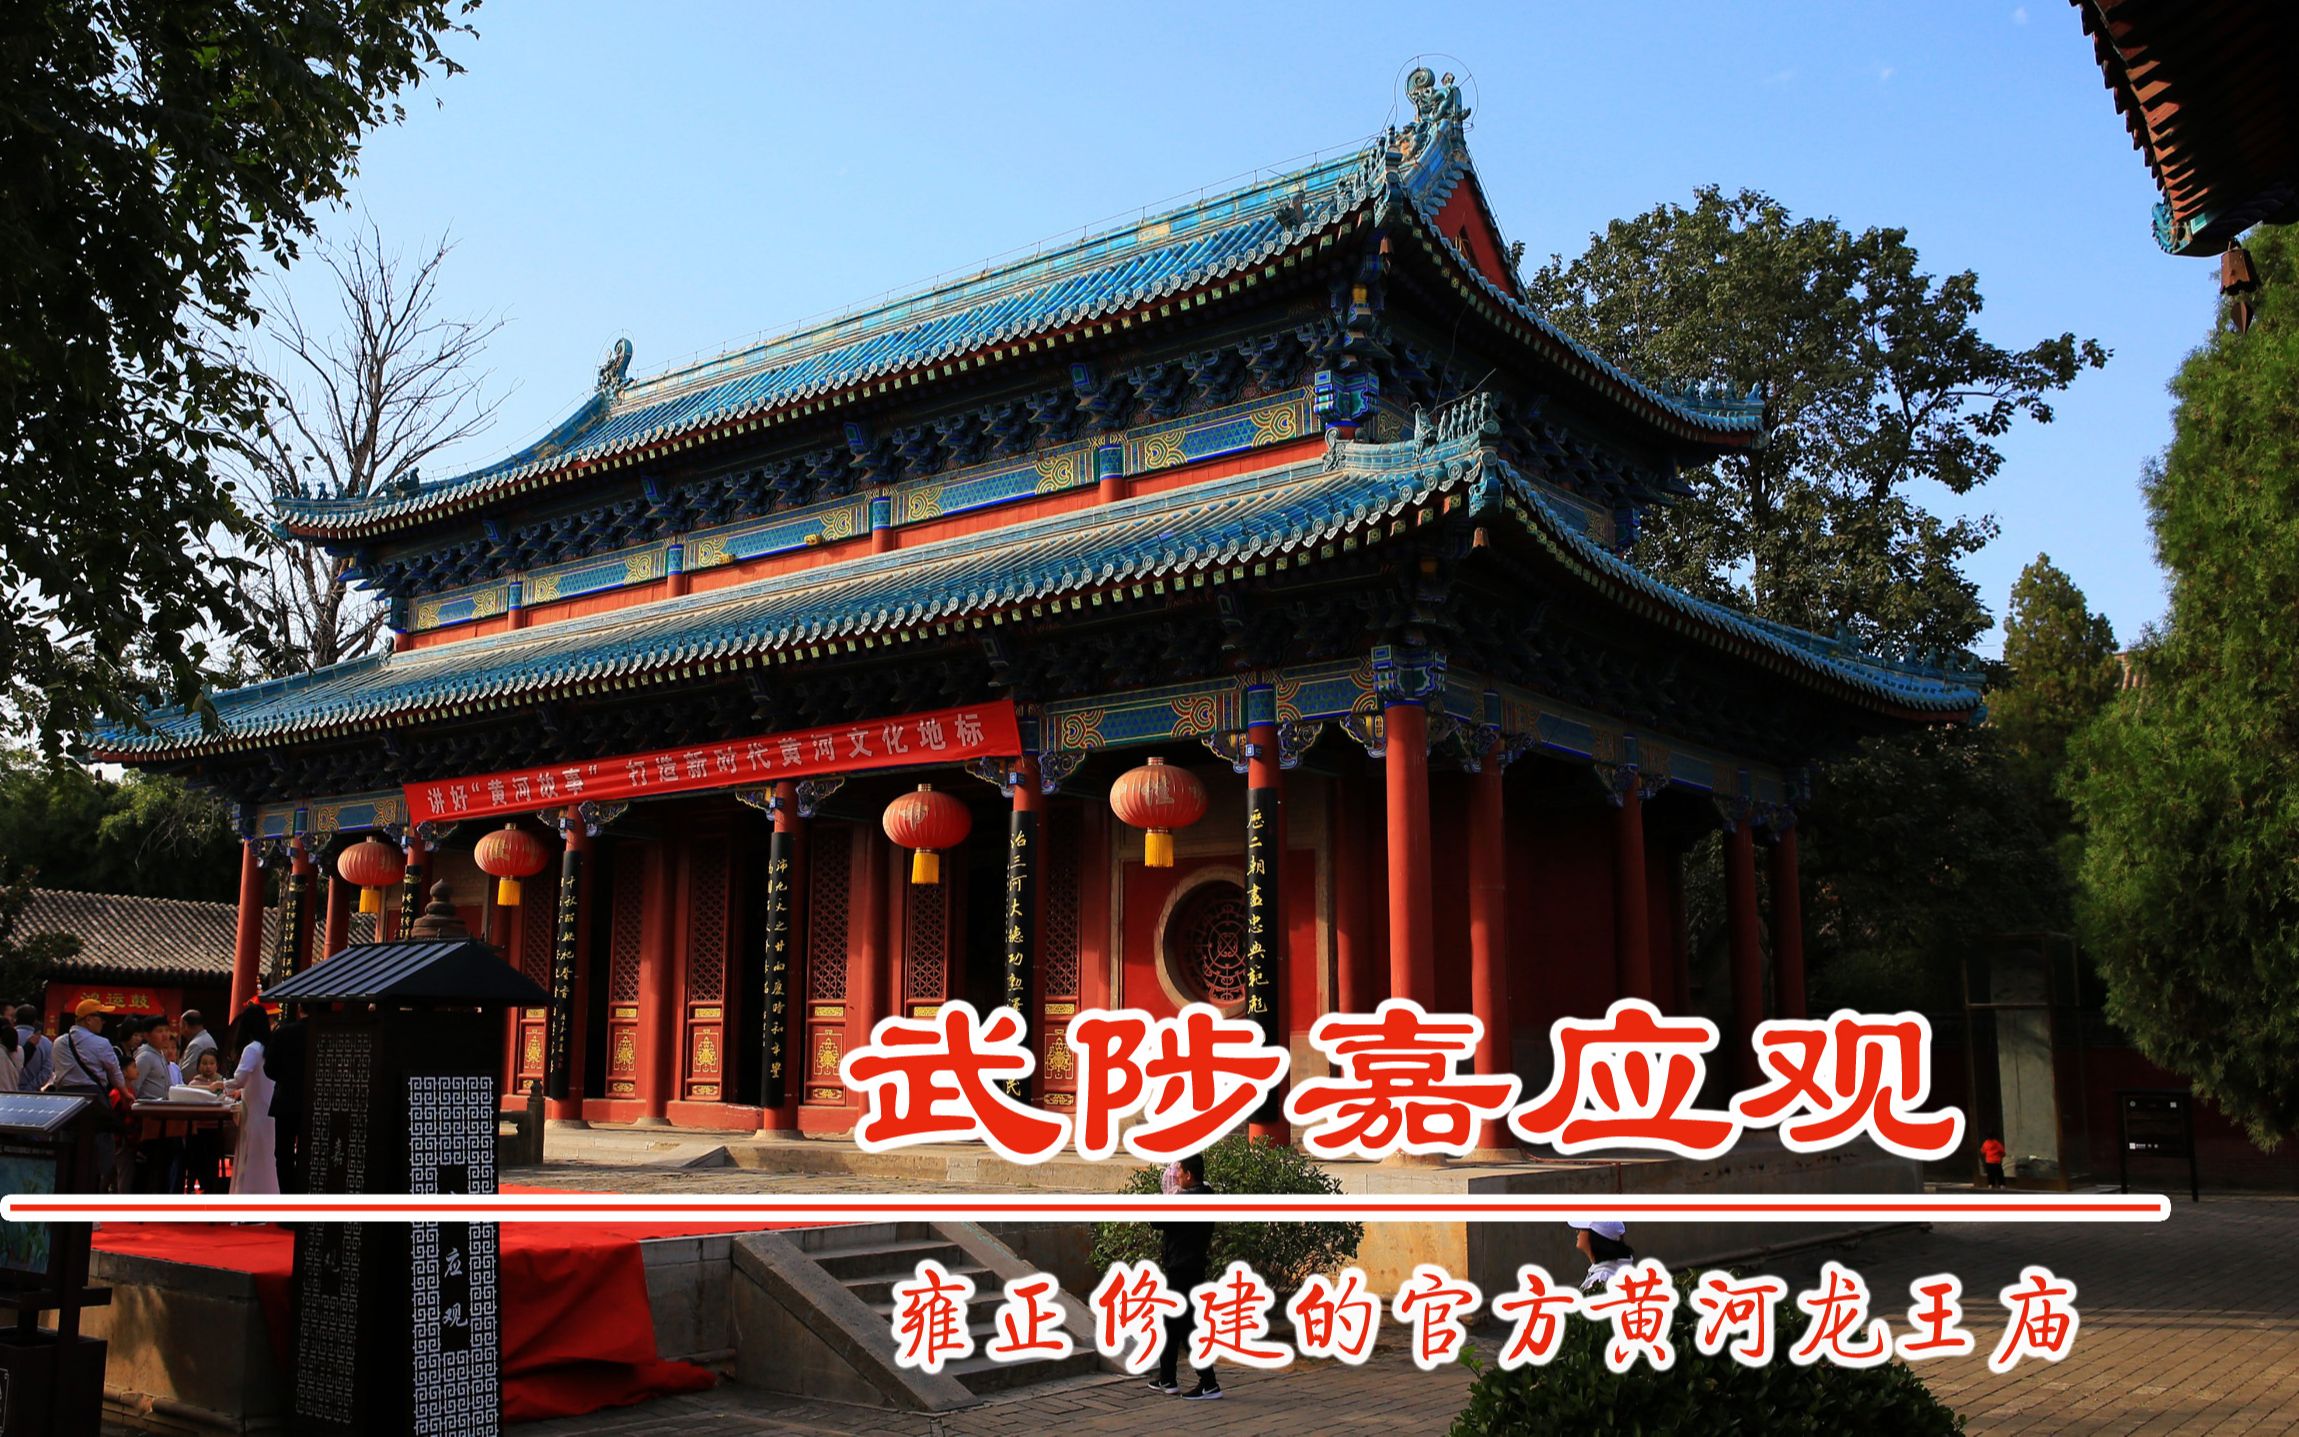 河南武陟县嘉应观,雍正修建的黄河龙王庙,水蓝色琉璃瓦大殿,当地俗称